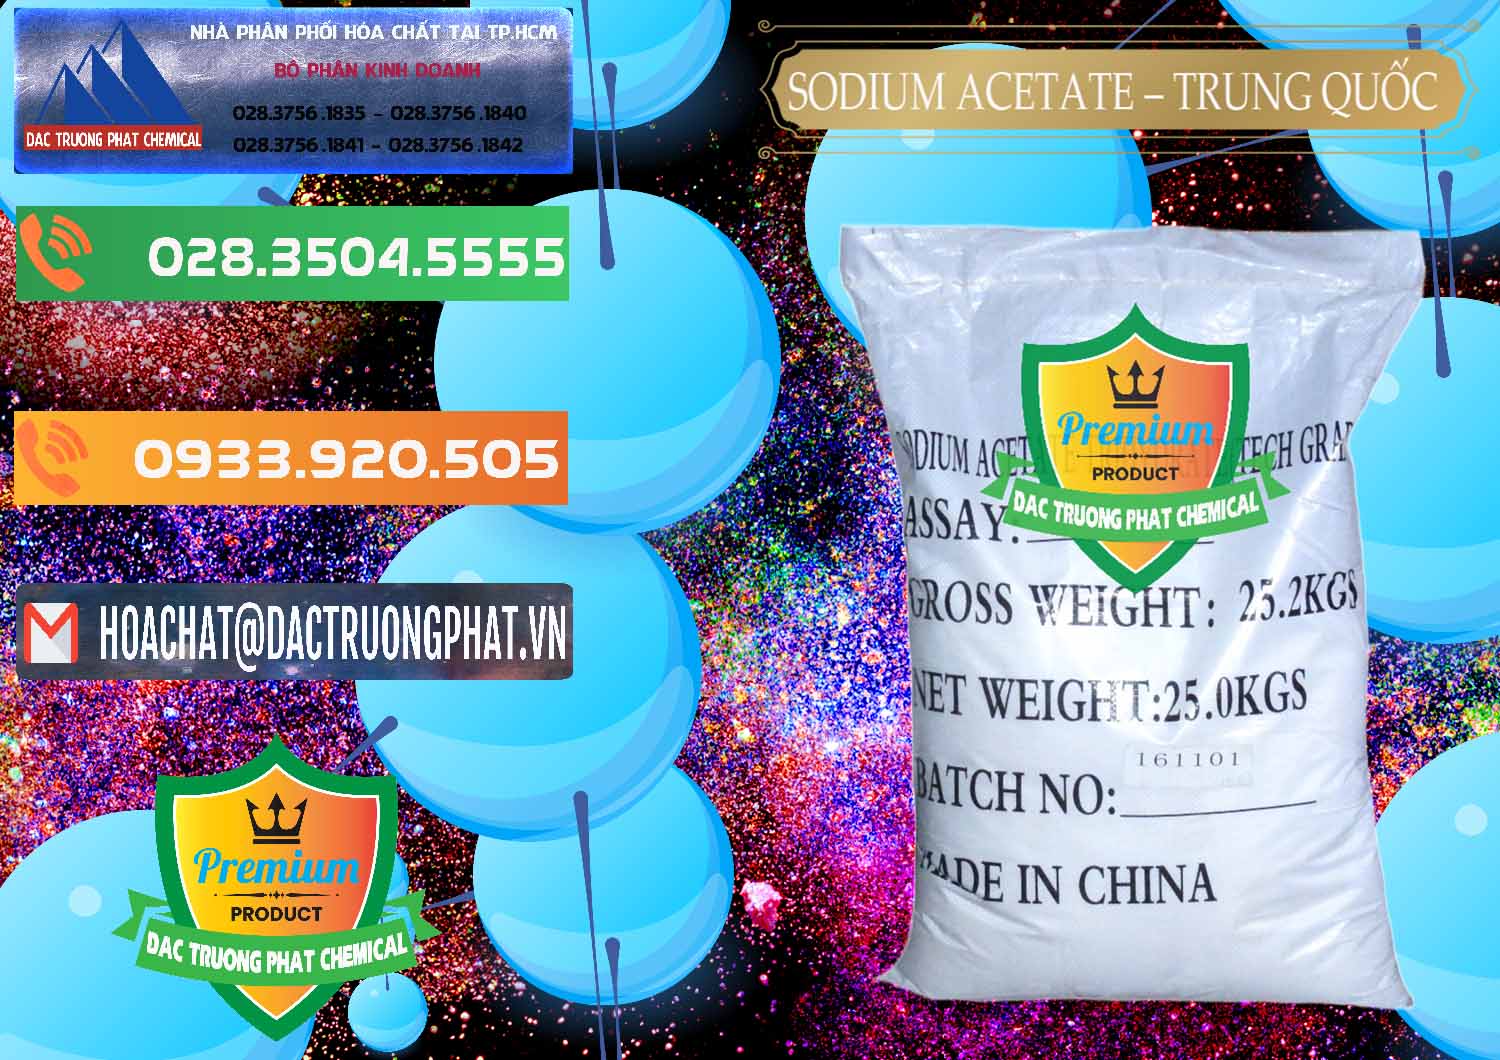 Đơn vị chuyên bán - cung ứng Sodium Acetate - Natri Acetate Trung Quốc China - 0134 - Chuyên phân phối và nhập khẩu hóa chất tại TP.HCM - hoachatxulynuoc.com.vn